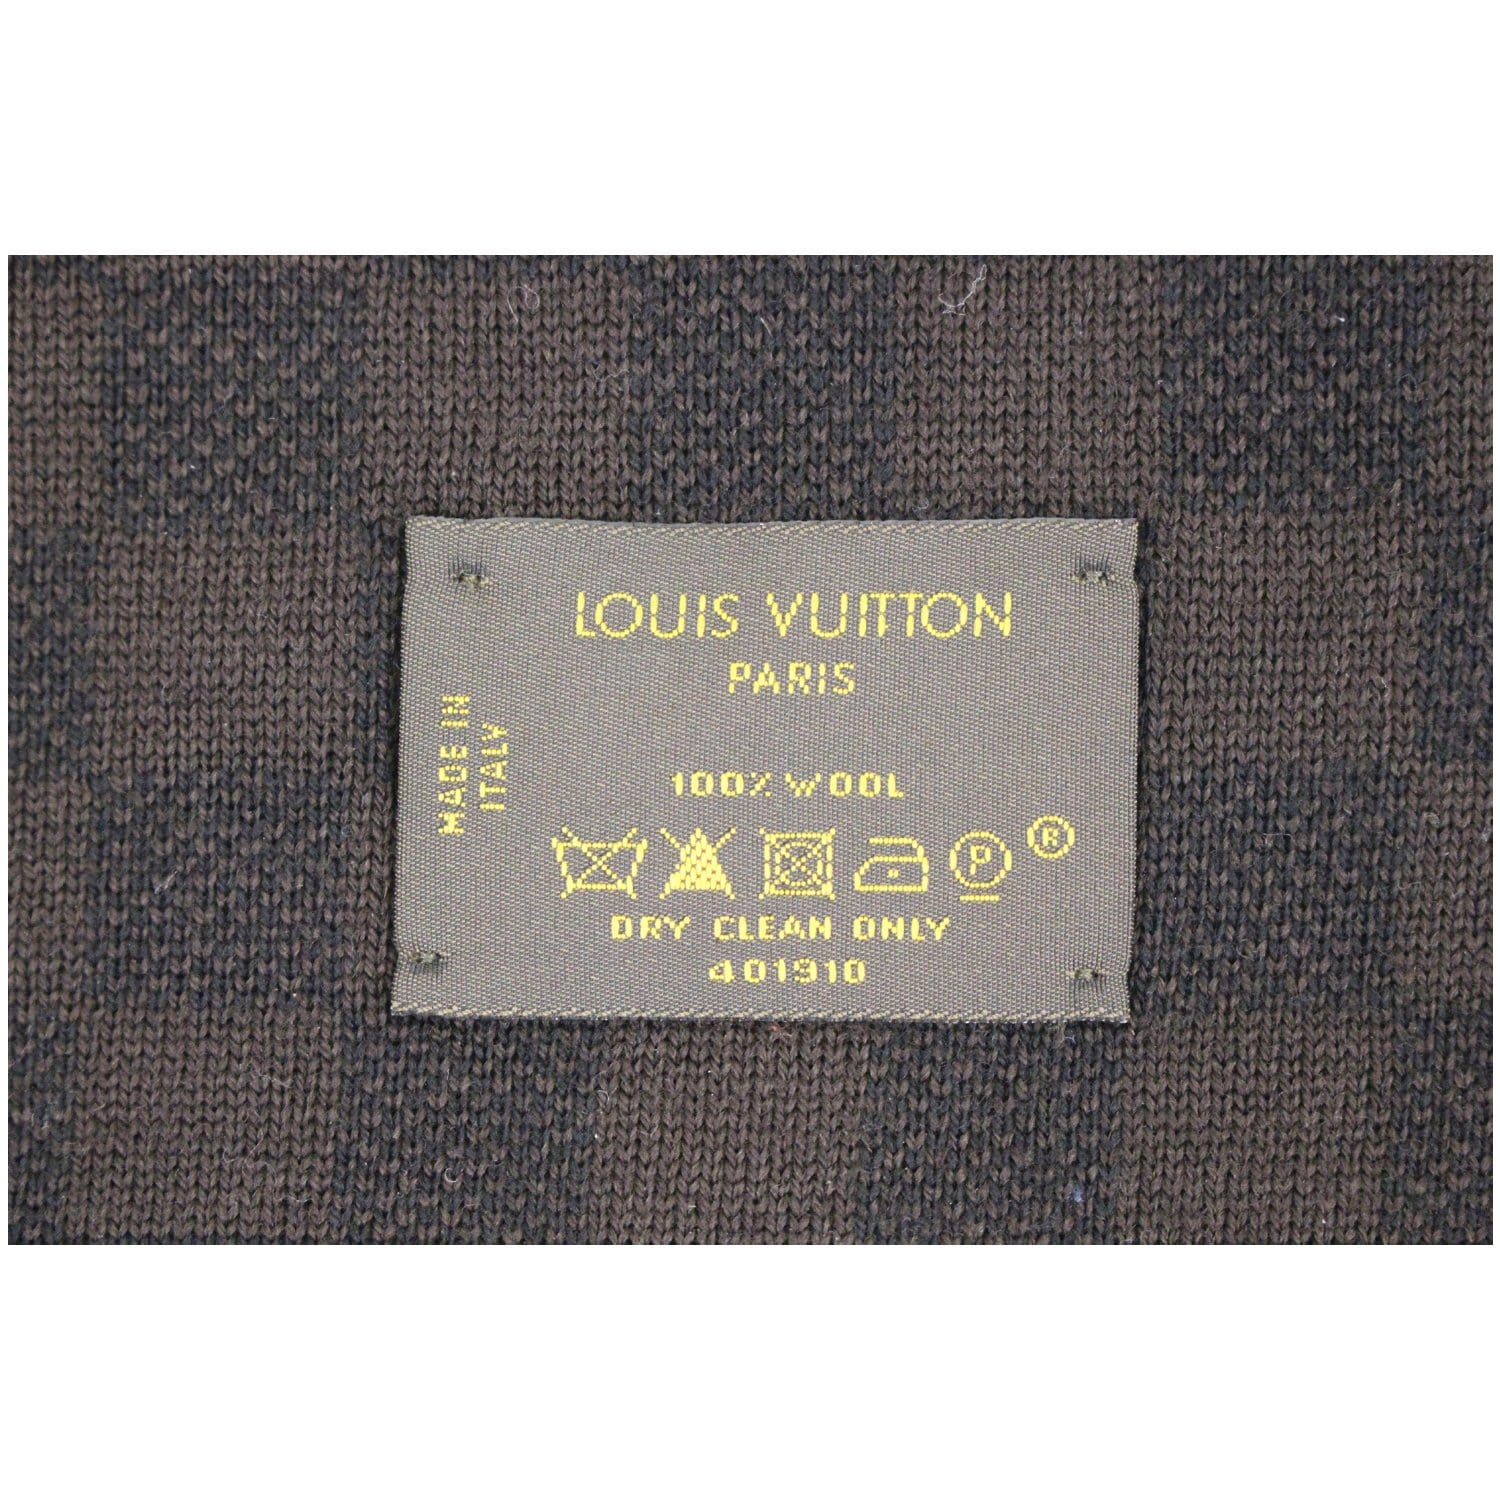 Shop Louis Vuitton Petit damier scarf (M70028, M70517, M70929, M70030) by  Sincerity_m639